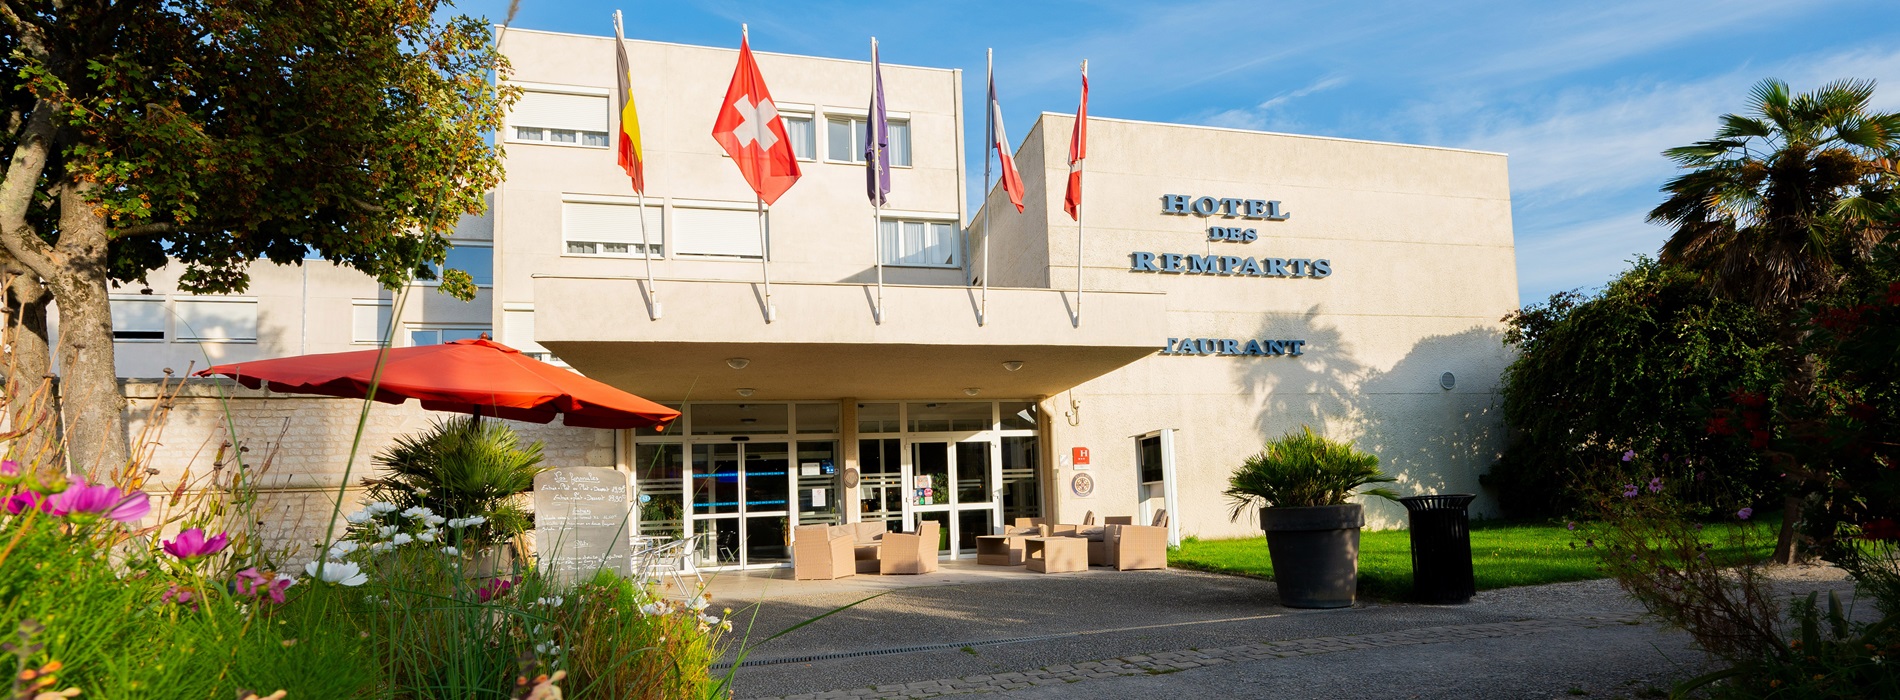 Bienvenue à l'hôtel des Rempart à Rochefort en Charente Maritime